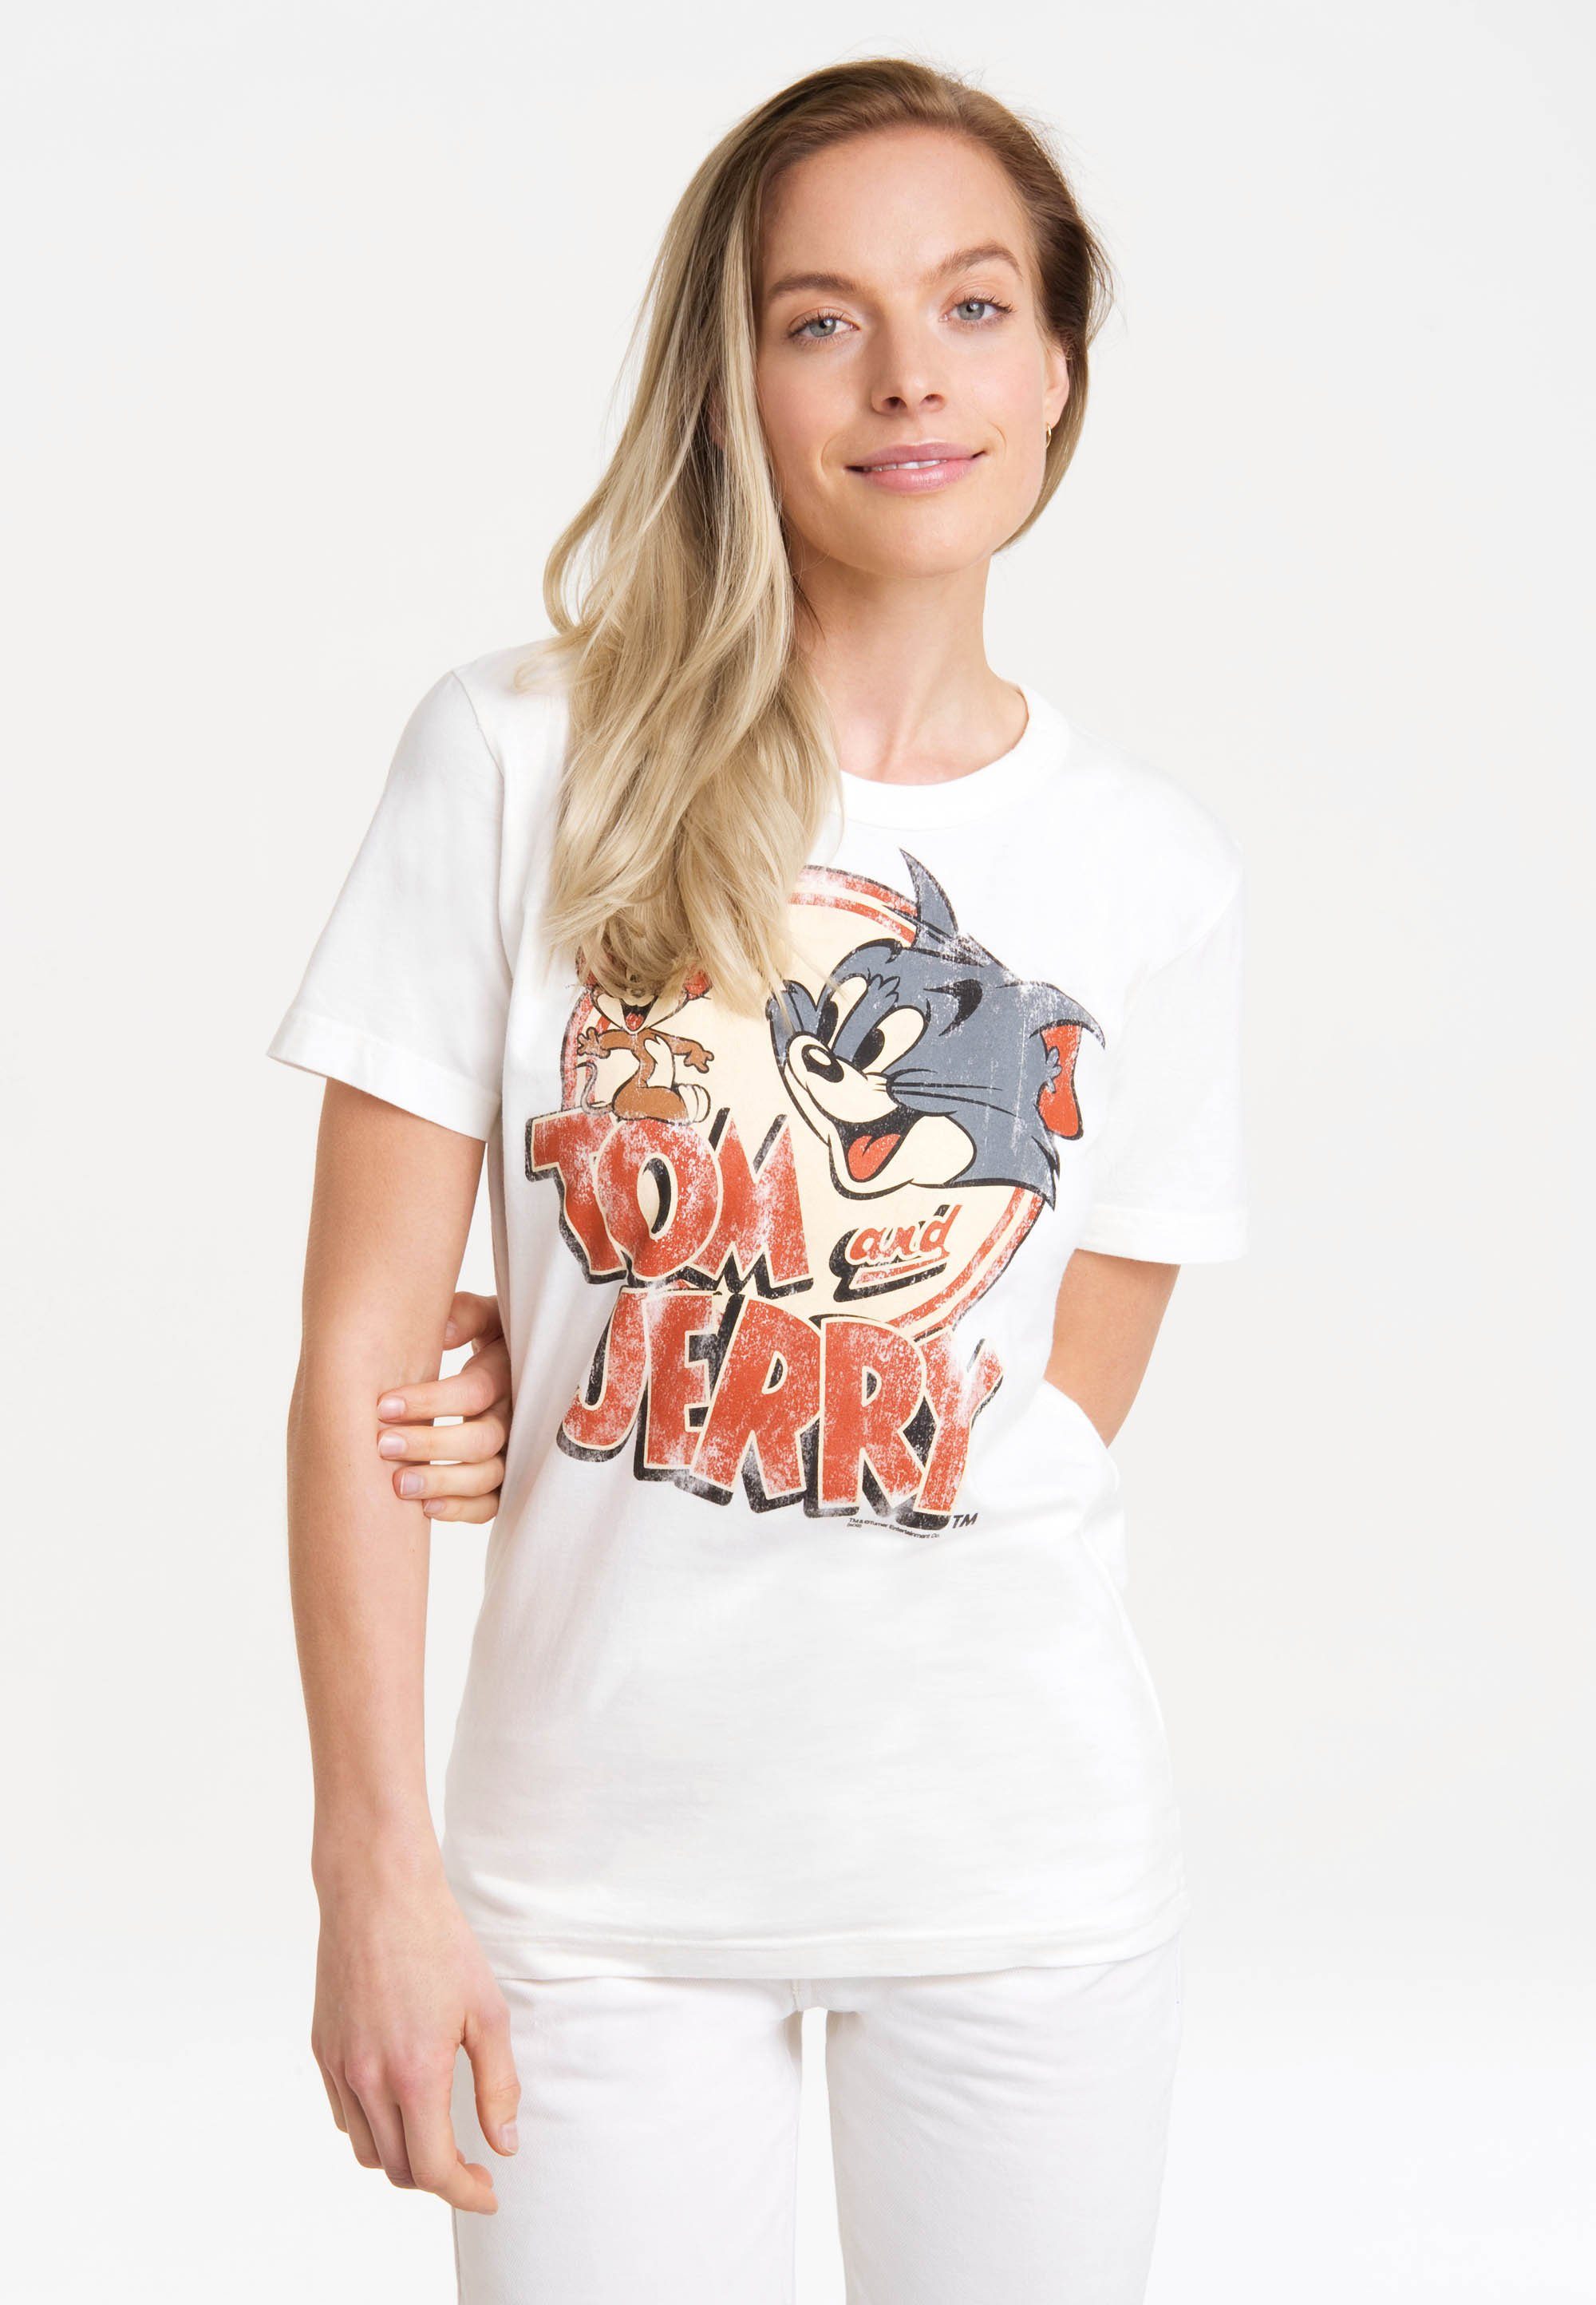 & LOGOSHIRT T-Shirt Print lizenziertem Tom Jerry mit